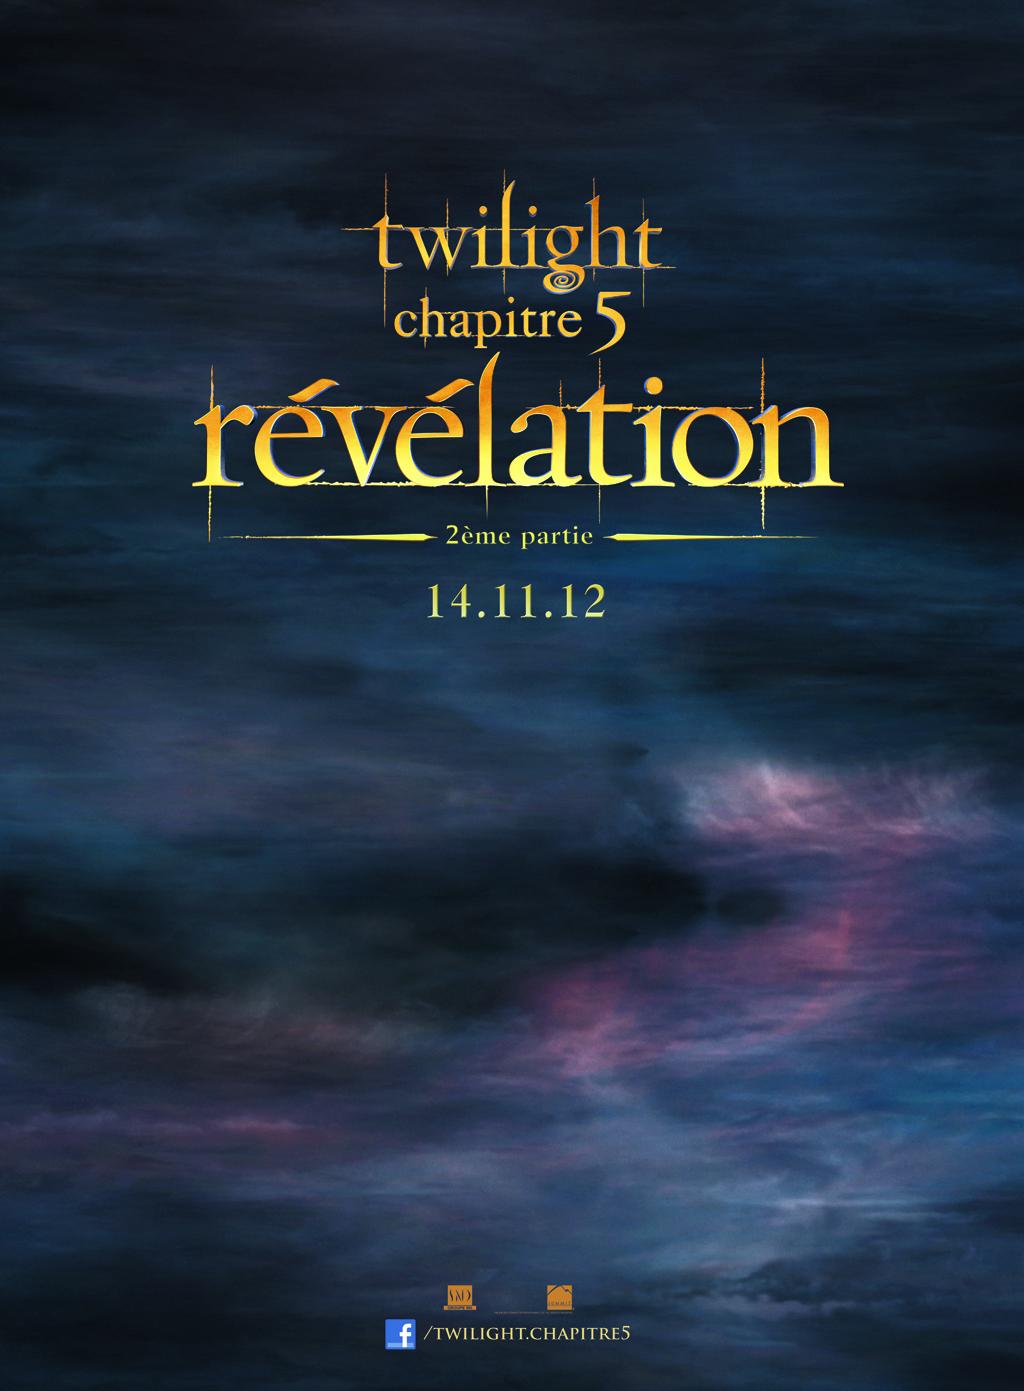 Premières photos officielles de Twilight - Chapitre 5 : Révélation 2ème partie